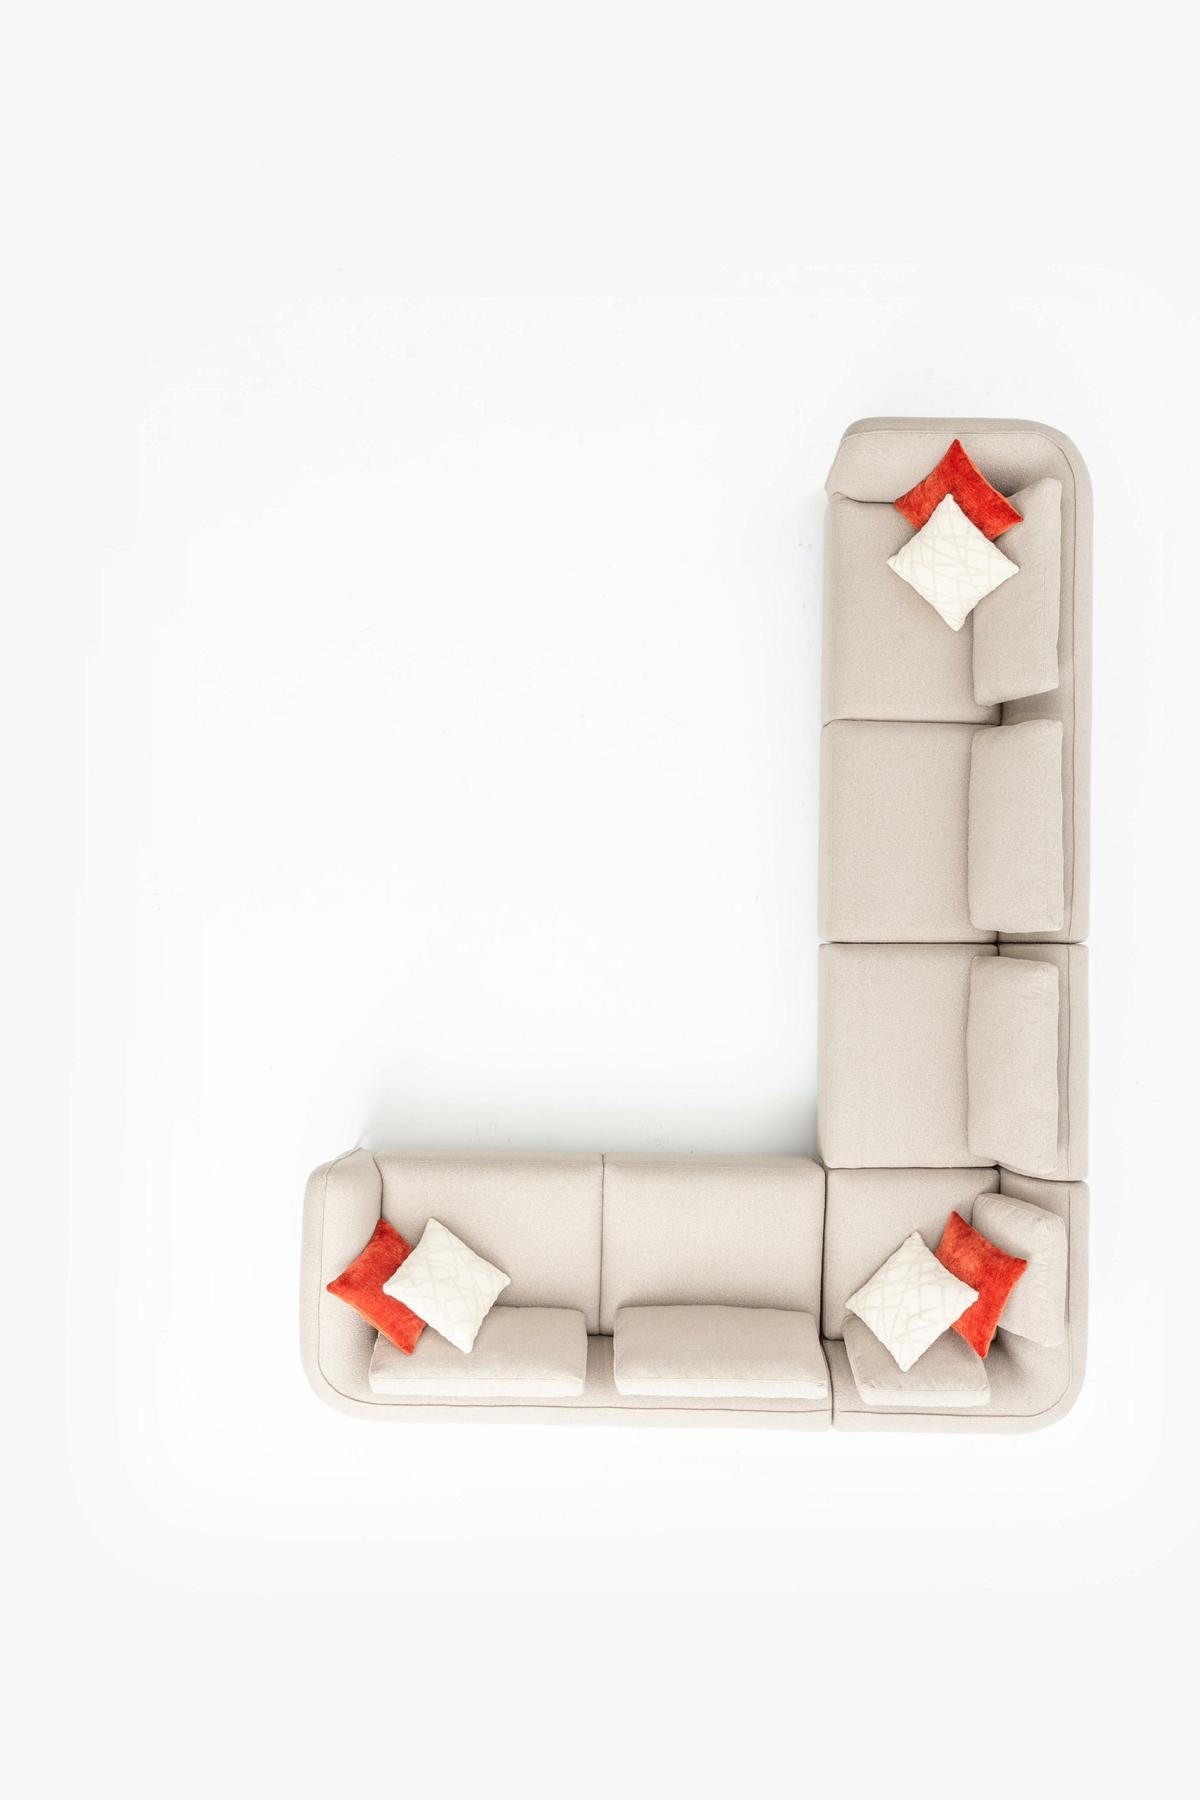 JVmoebel Ecksofa Design Ecksofa Sofa L-Form Modern Wohnzimmer Beige Couch, Made in Europe